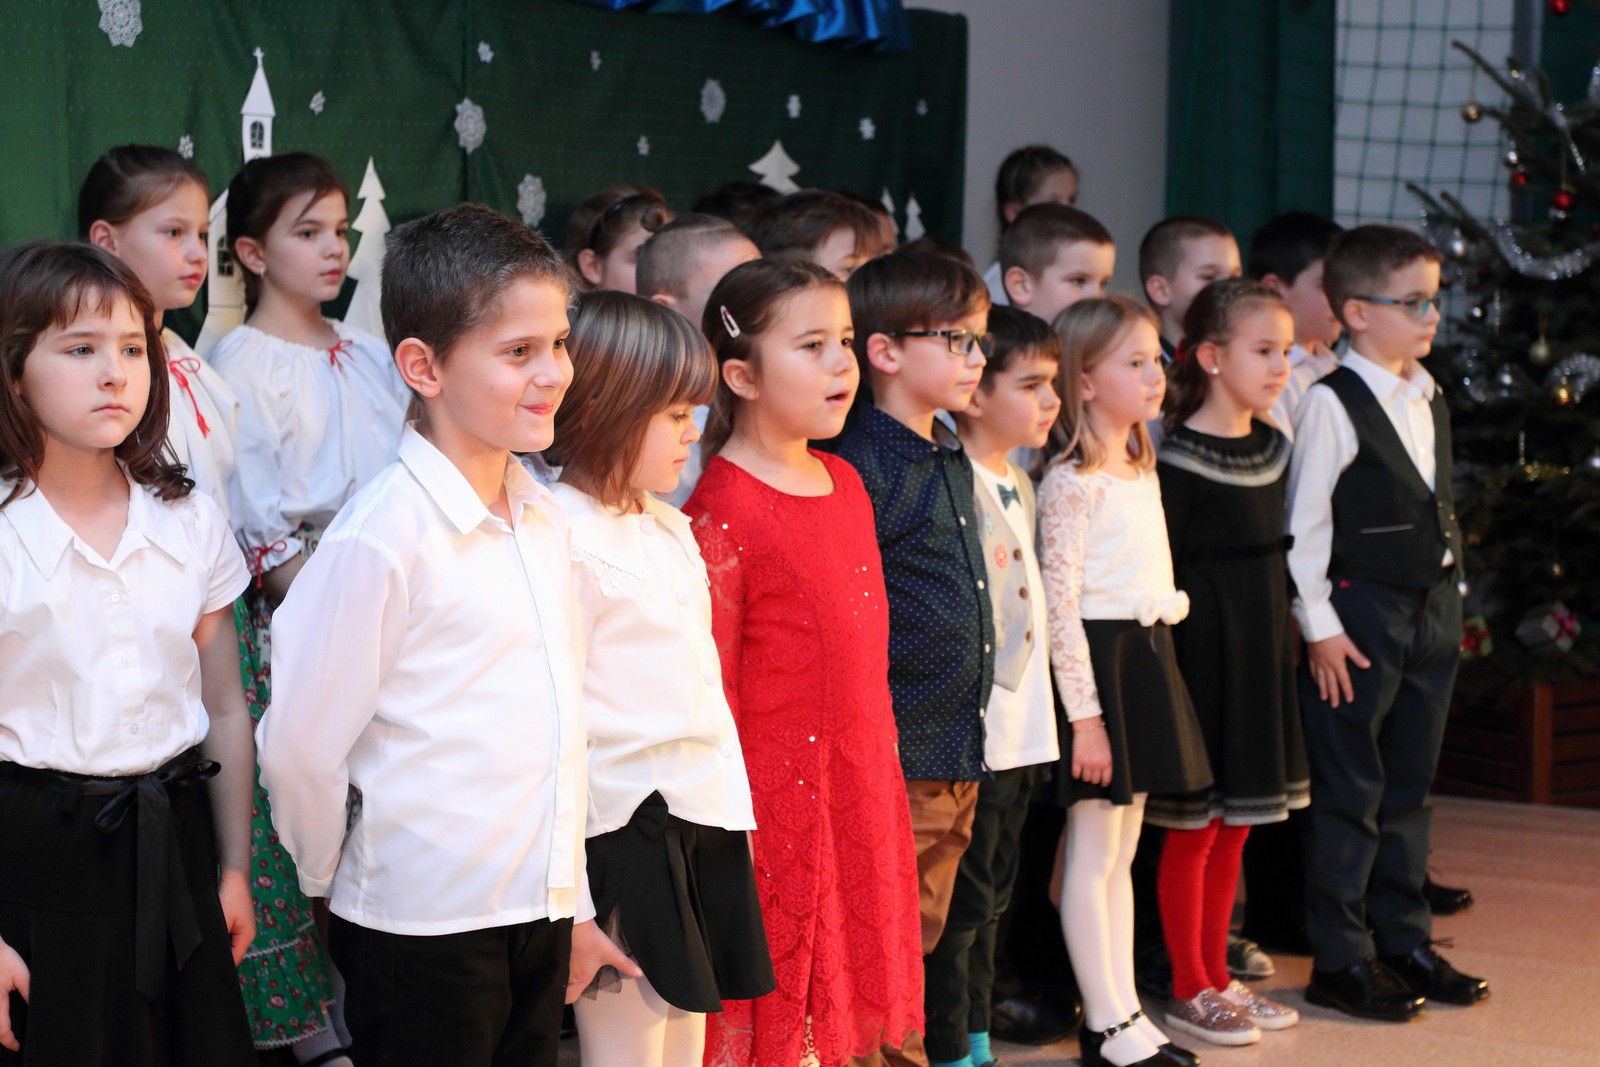 Hit, remény, öröm és szeretet - iskolások karácsonyi műsora Feketehegy-Szárazréten